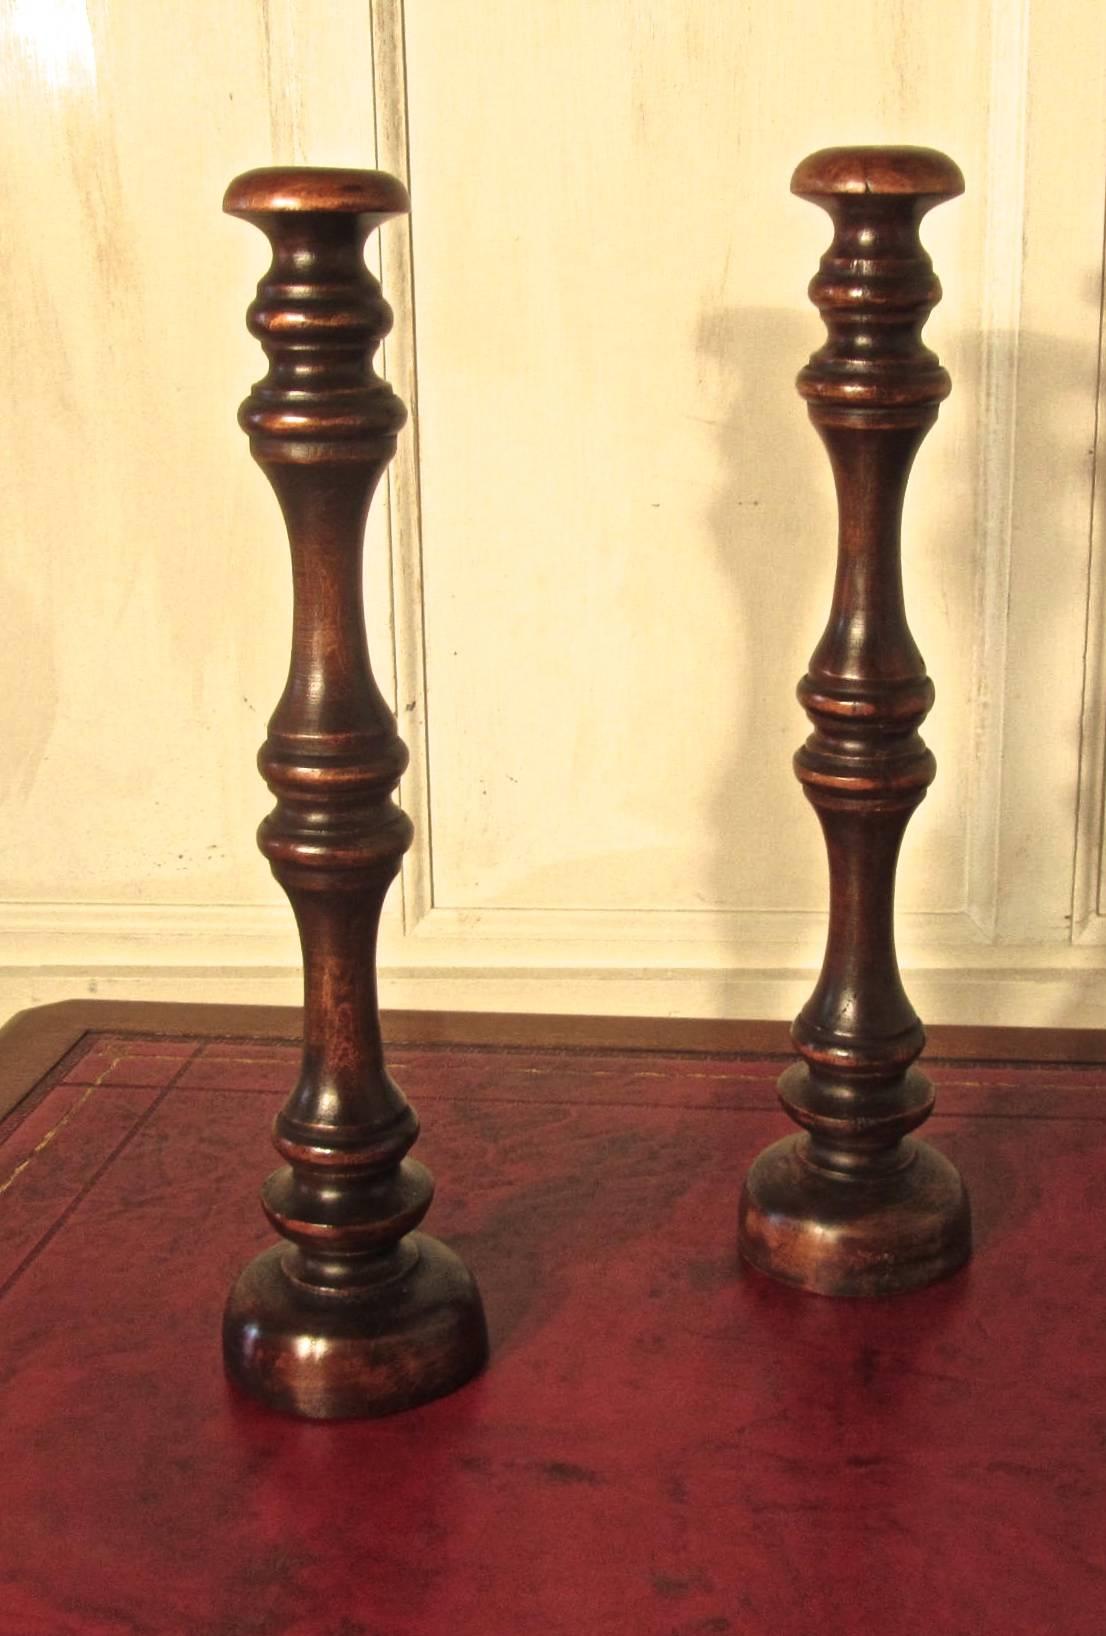 Dies ist ein hervorragendes hohes Paar gedrechselte Perückenständer aus Obstholz, sie stammen aus dem späten 19. Jahrhundert, sie haben eine lange einteilige gedrechselte aufrechte Säule mit einem gebogenen oberen Rest auf einem gedrechselten runden